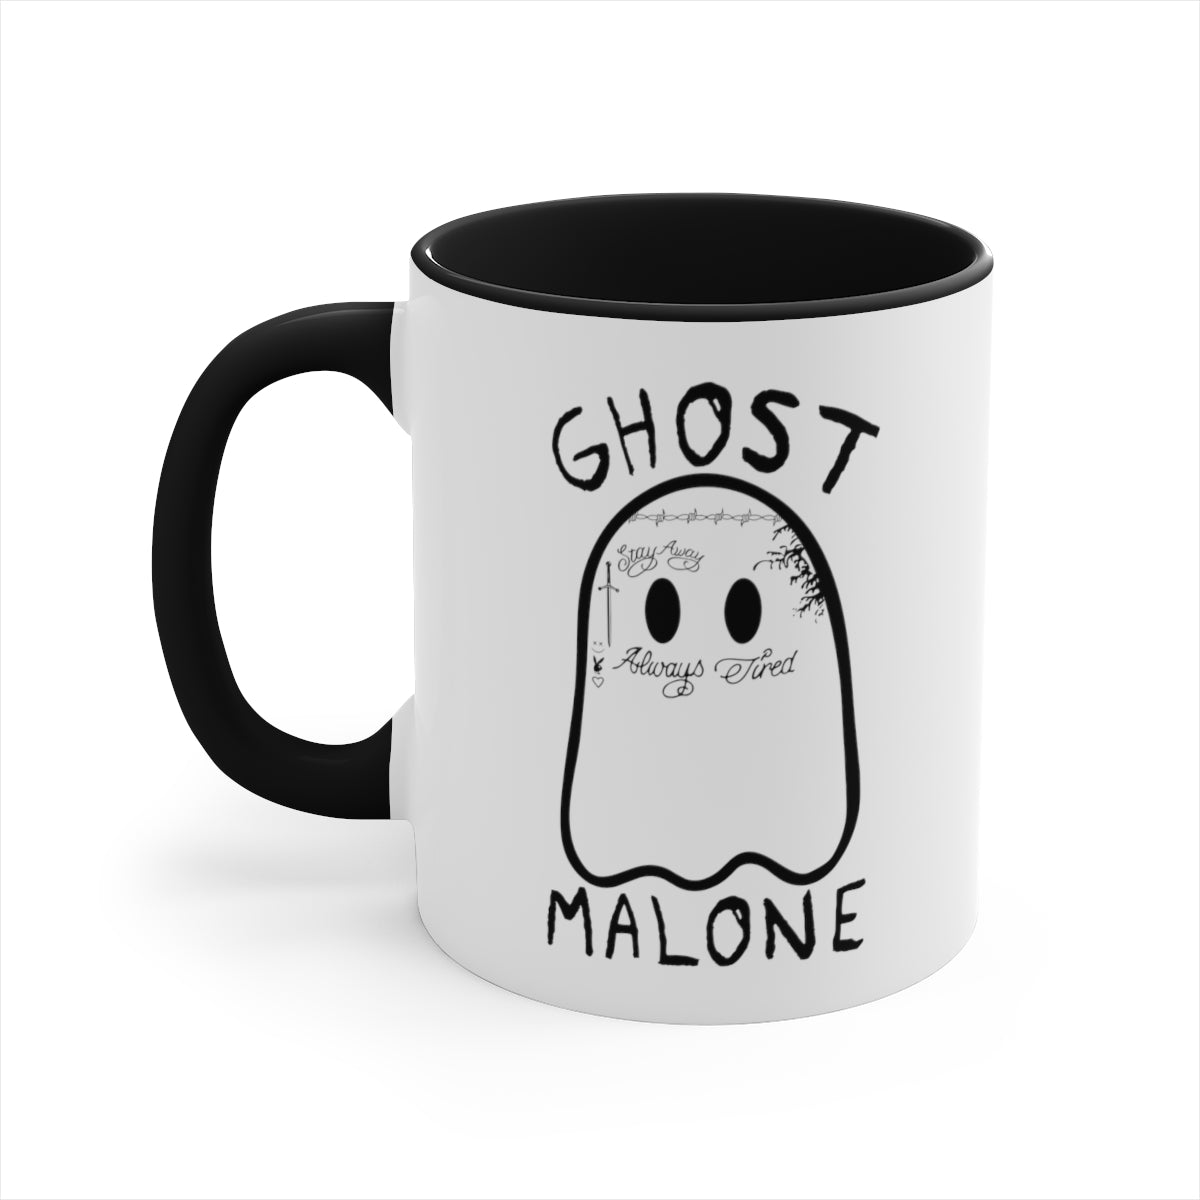 Ghost Malone Mug